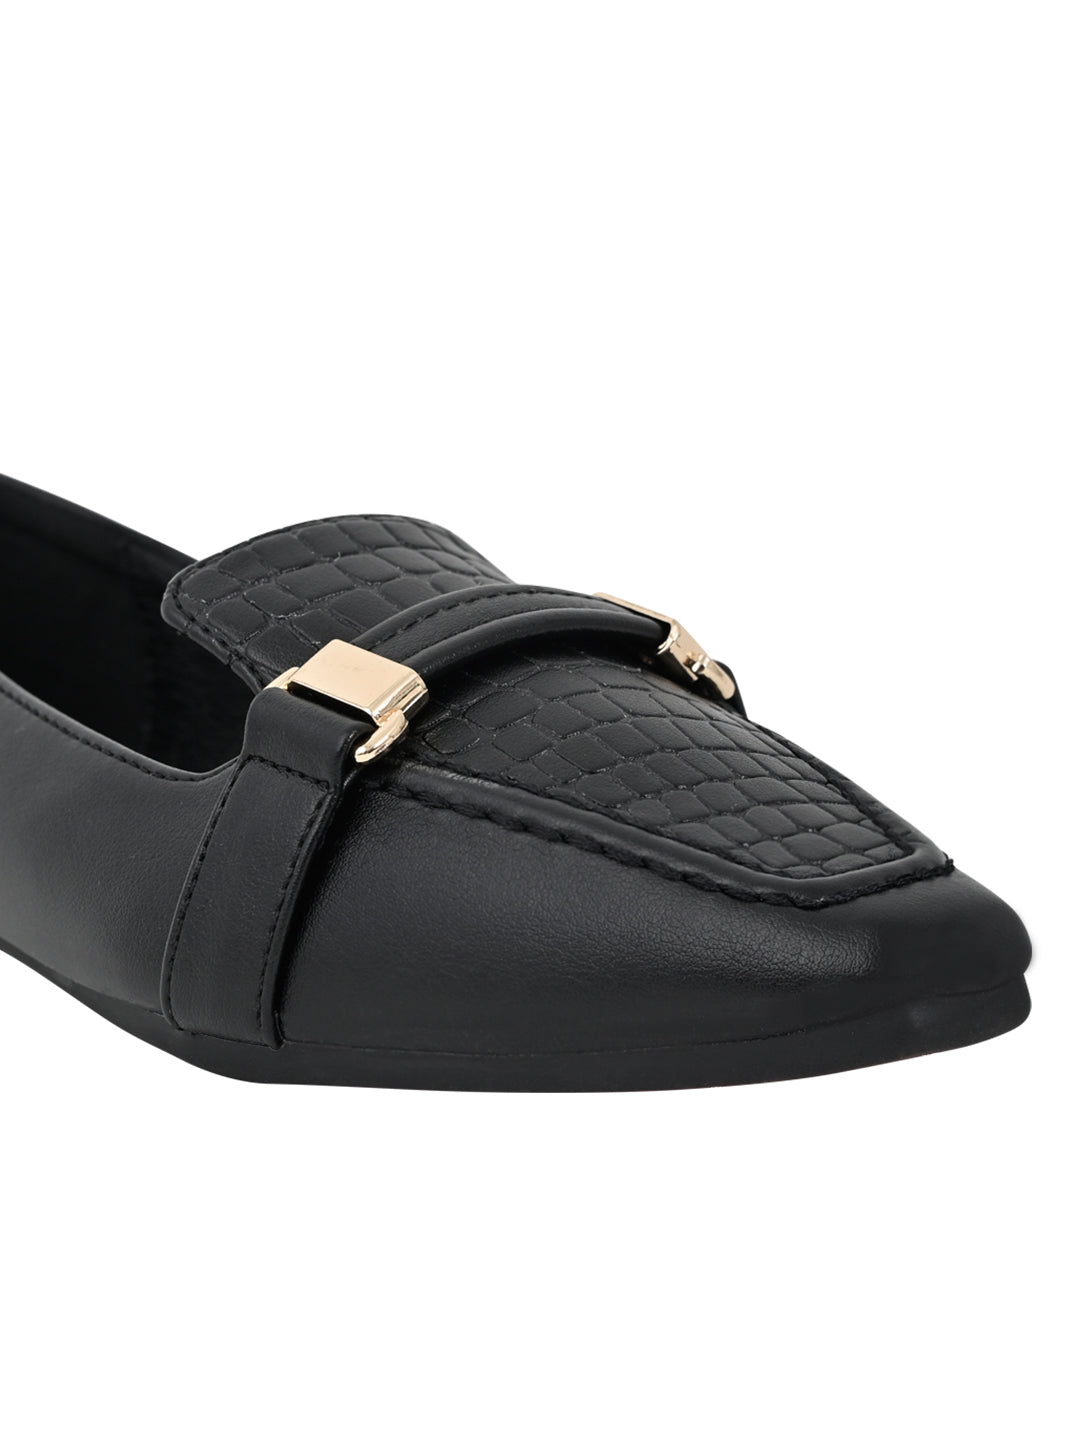 Footwear, Women Footwear, Black
 Loafers